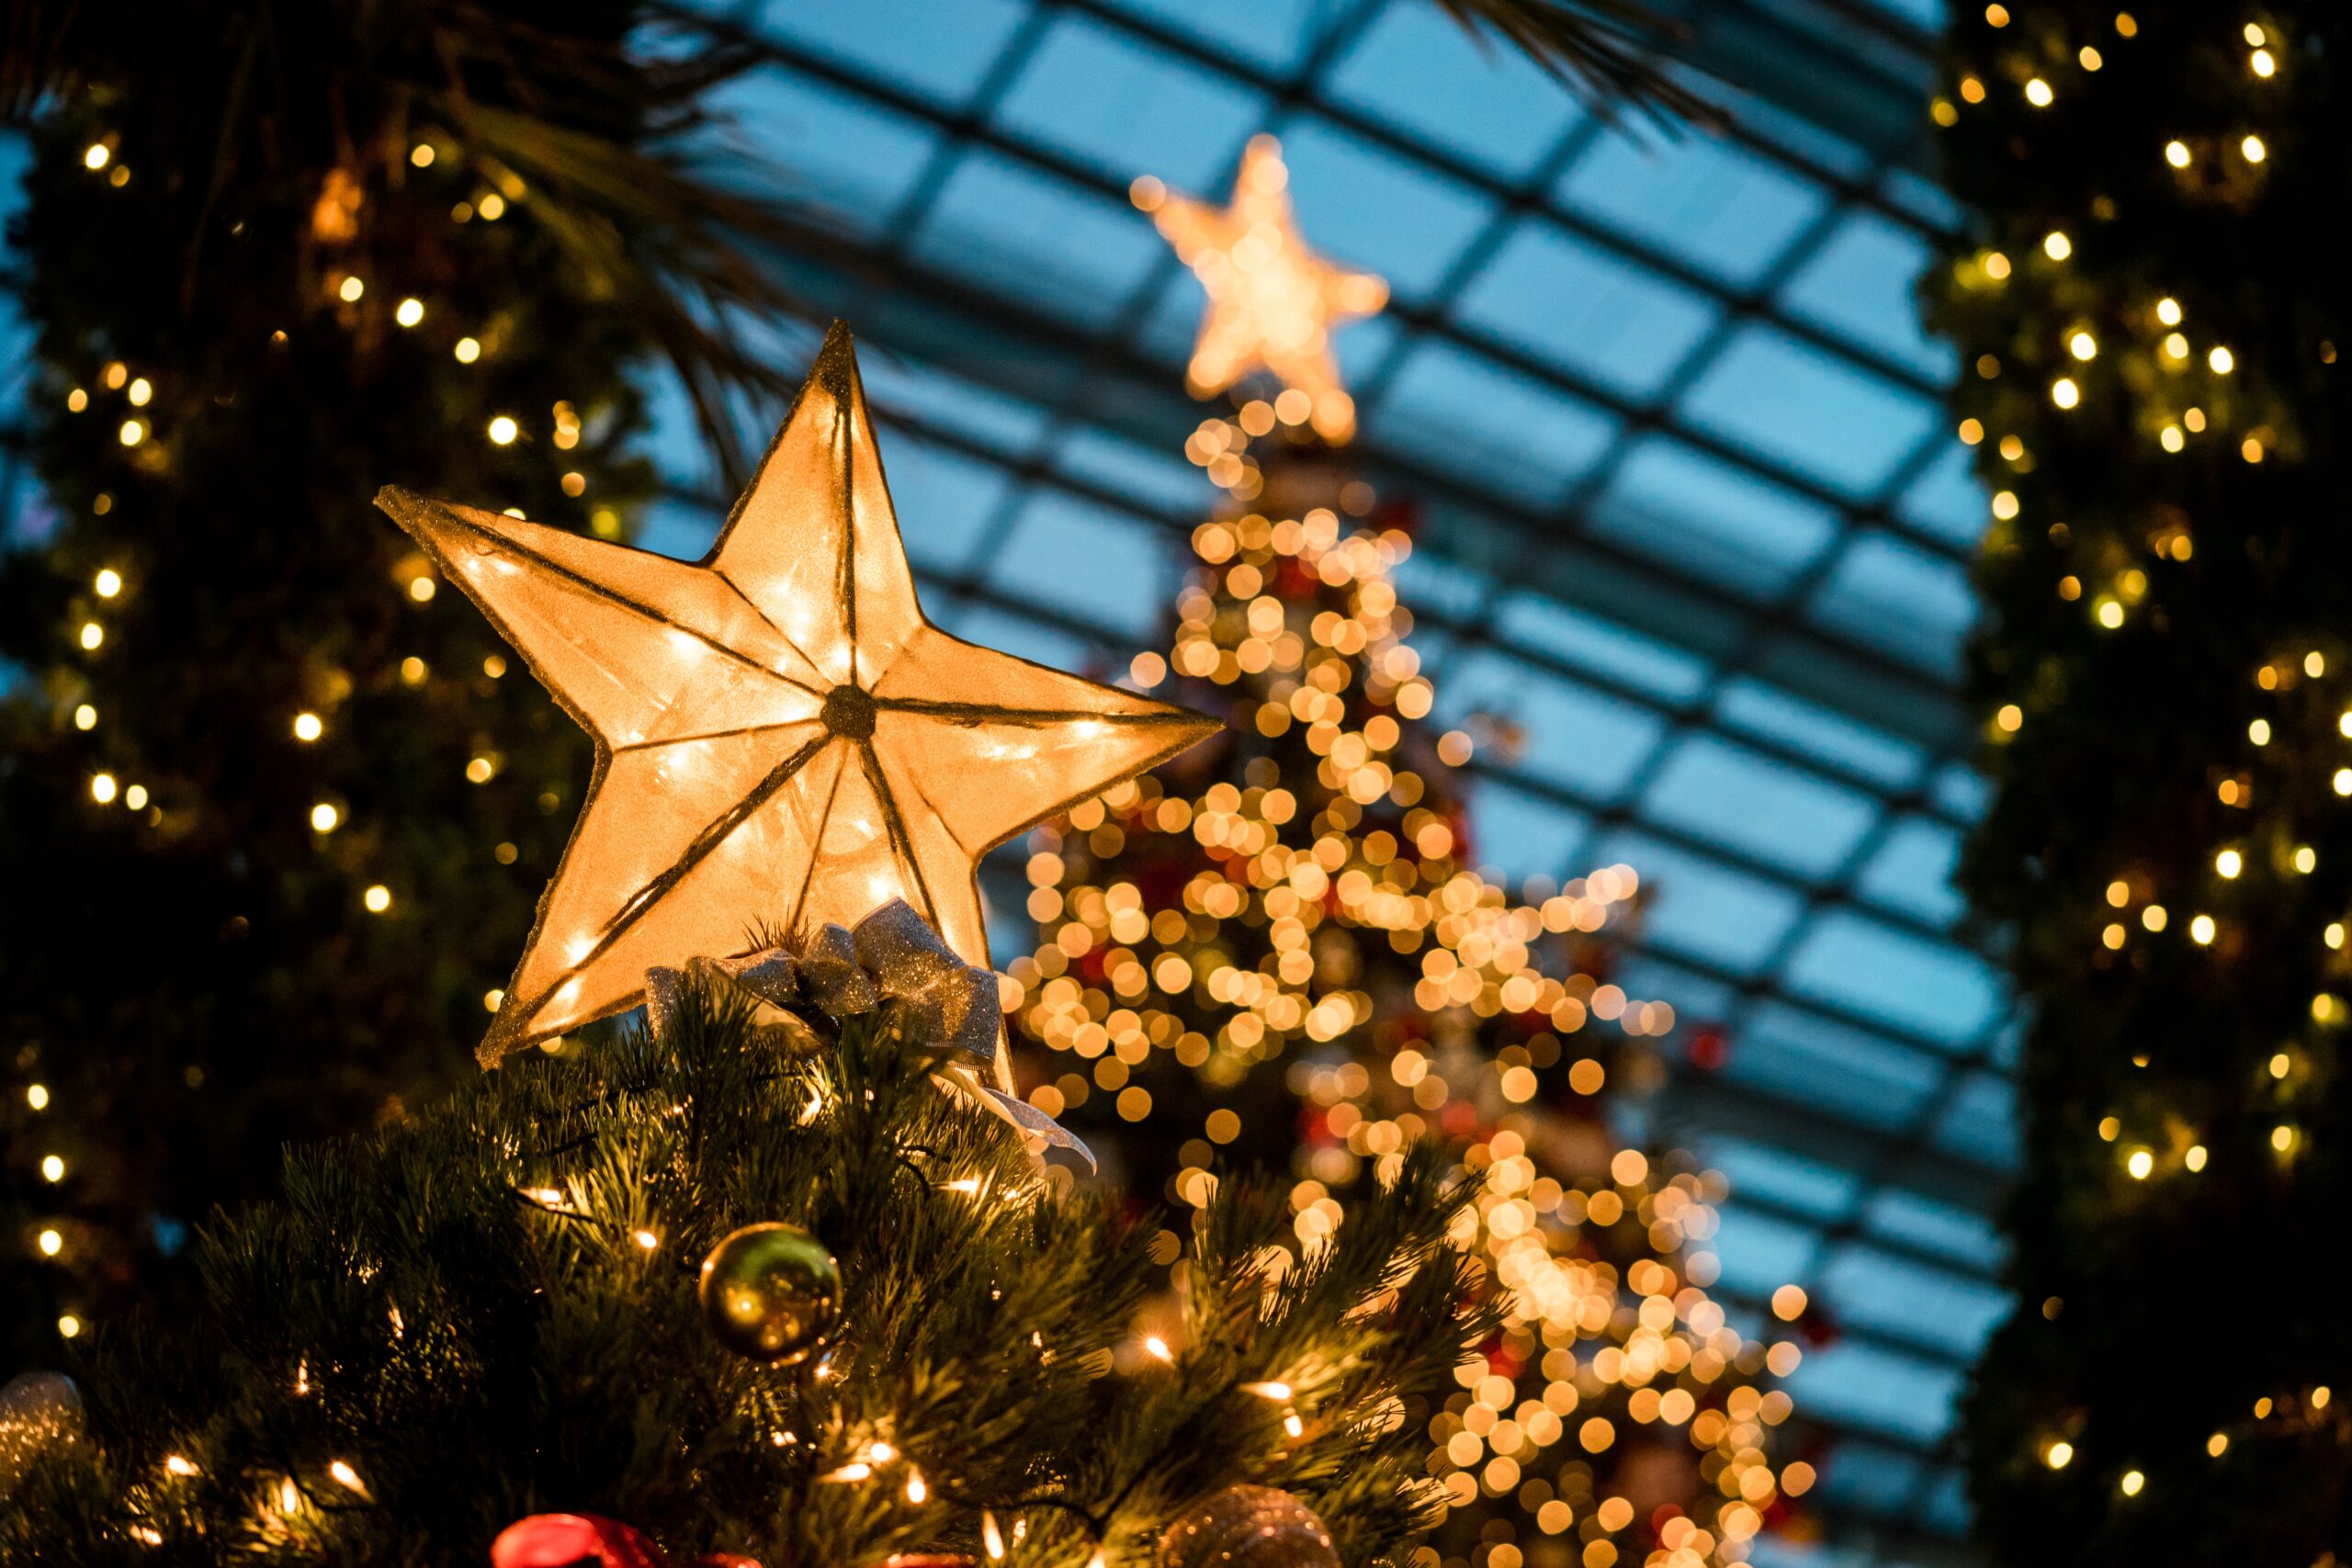 Christmas lights and stars on Christmas trees.